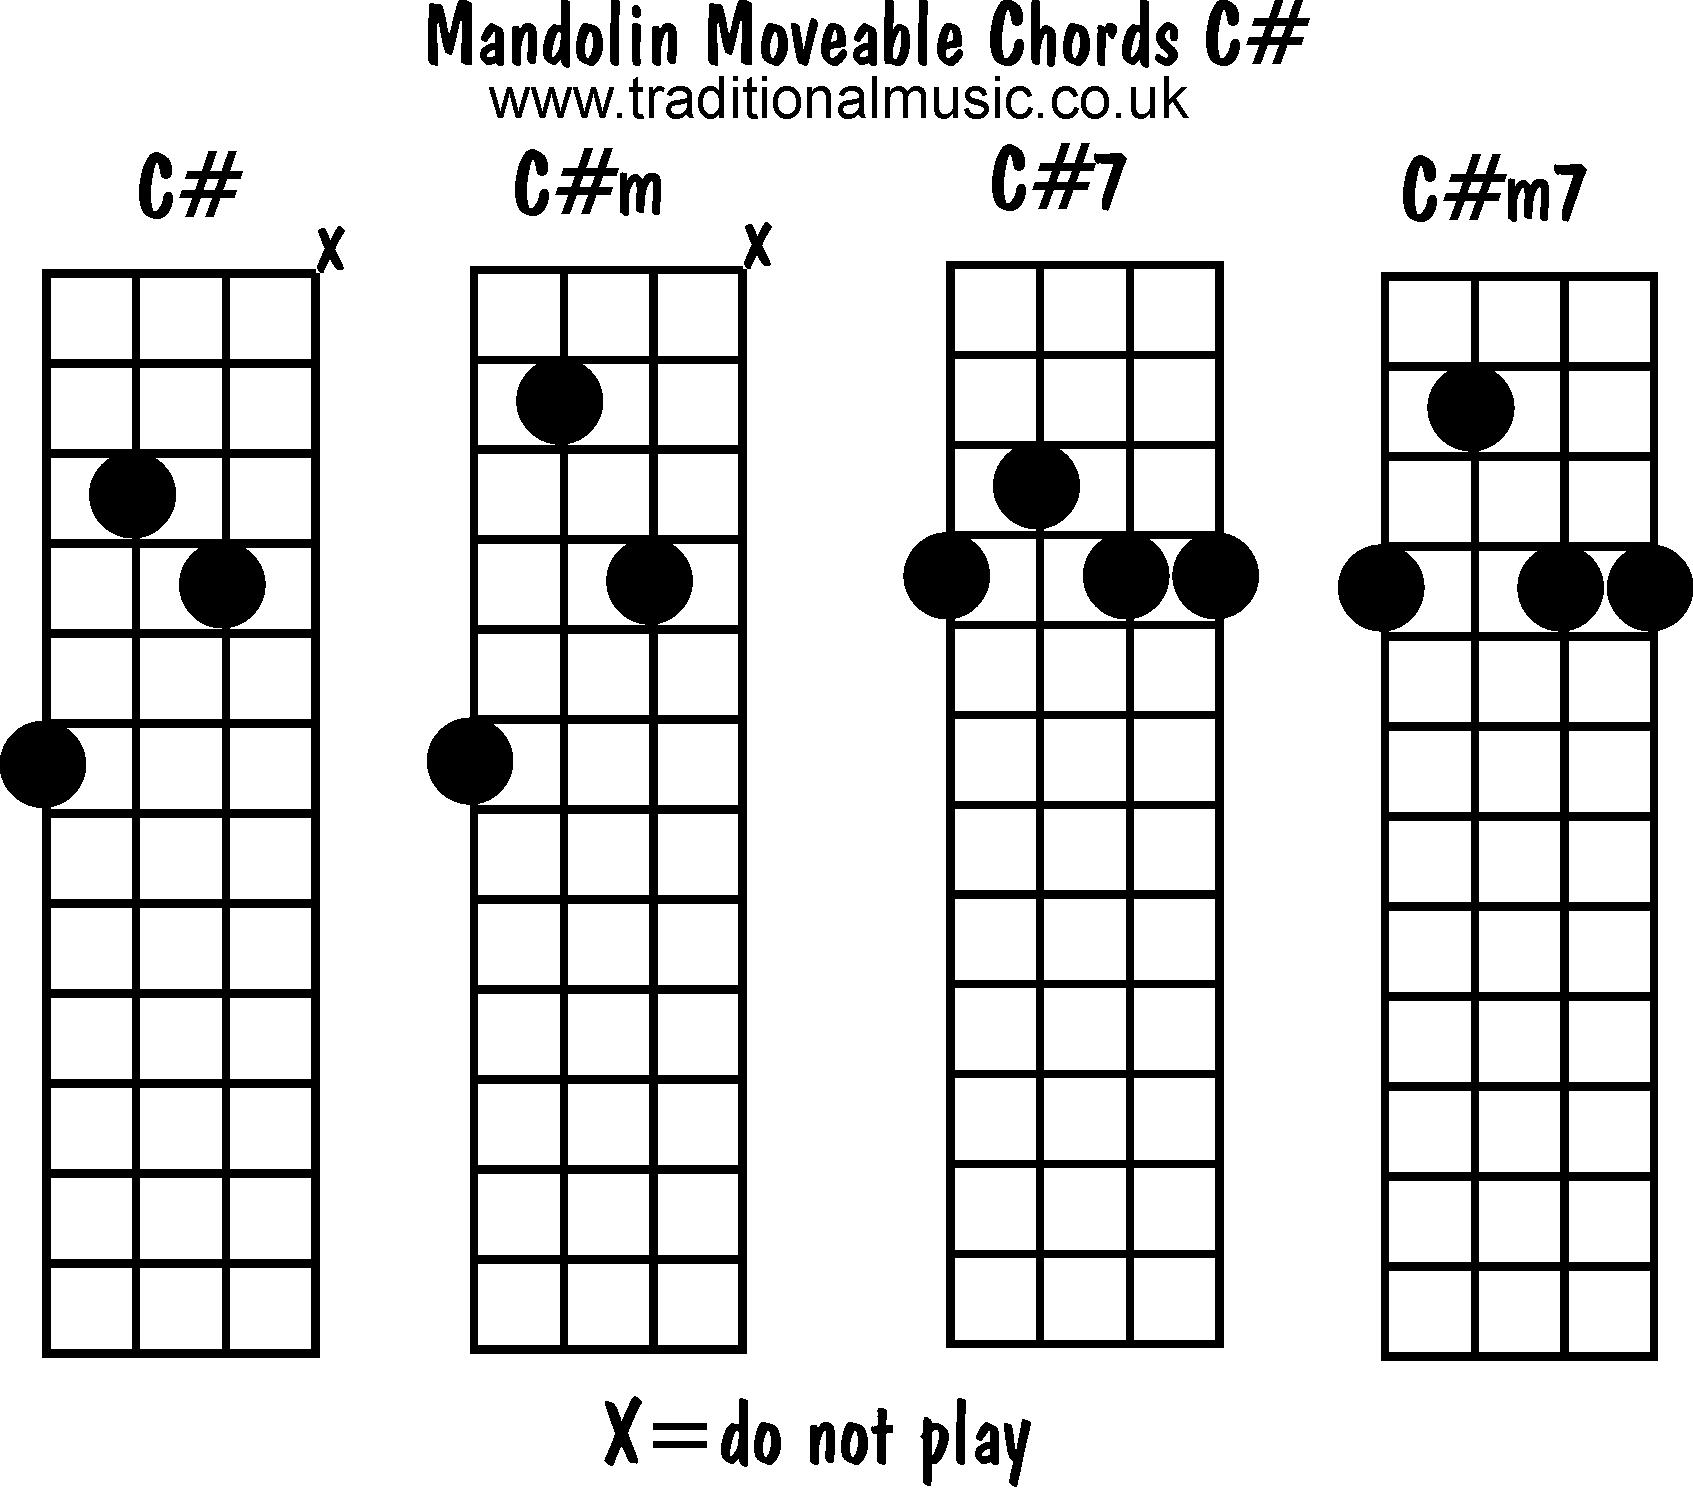 Moveable mandolin chords: C#, C#m, C#7, C#m7